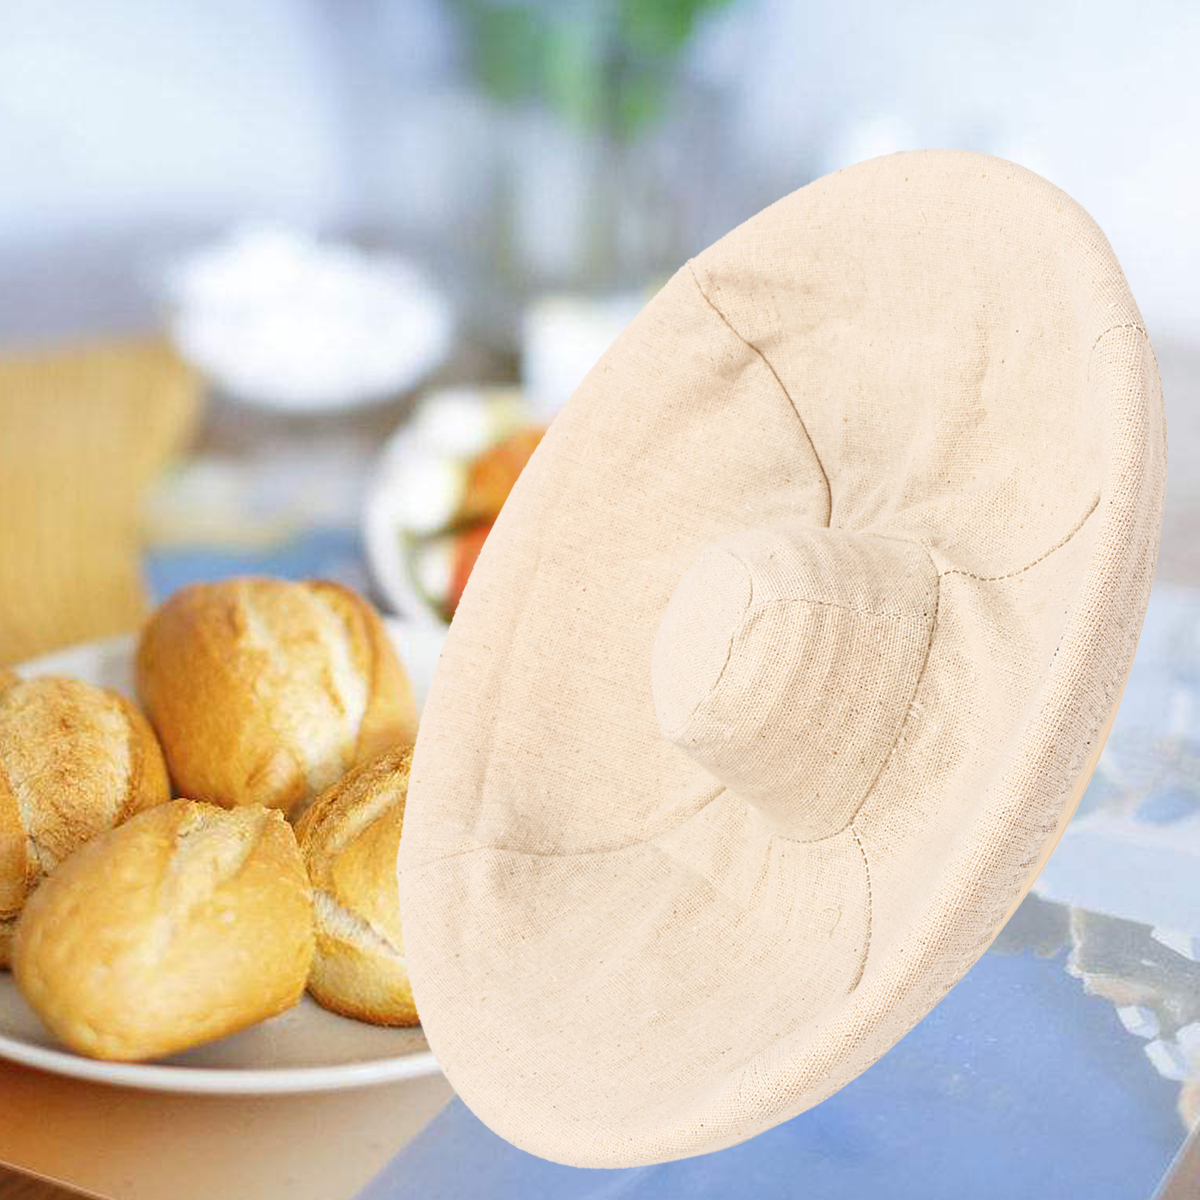 Handmade-Round-Oval-Banneton-Bortform-Rattan-Storage-Baskets-Bread-Dough-Proofing-Liner-1383037-7